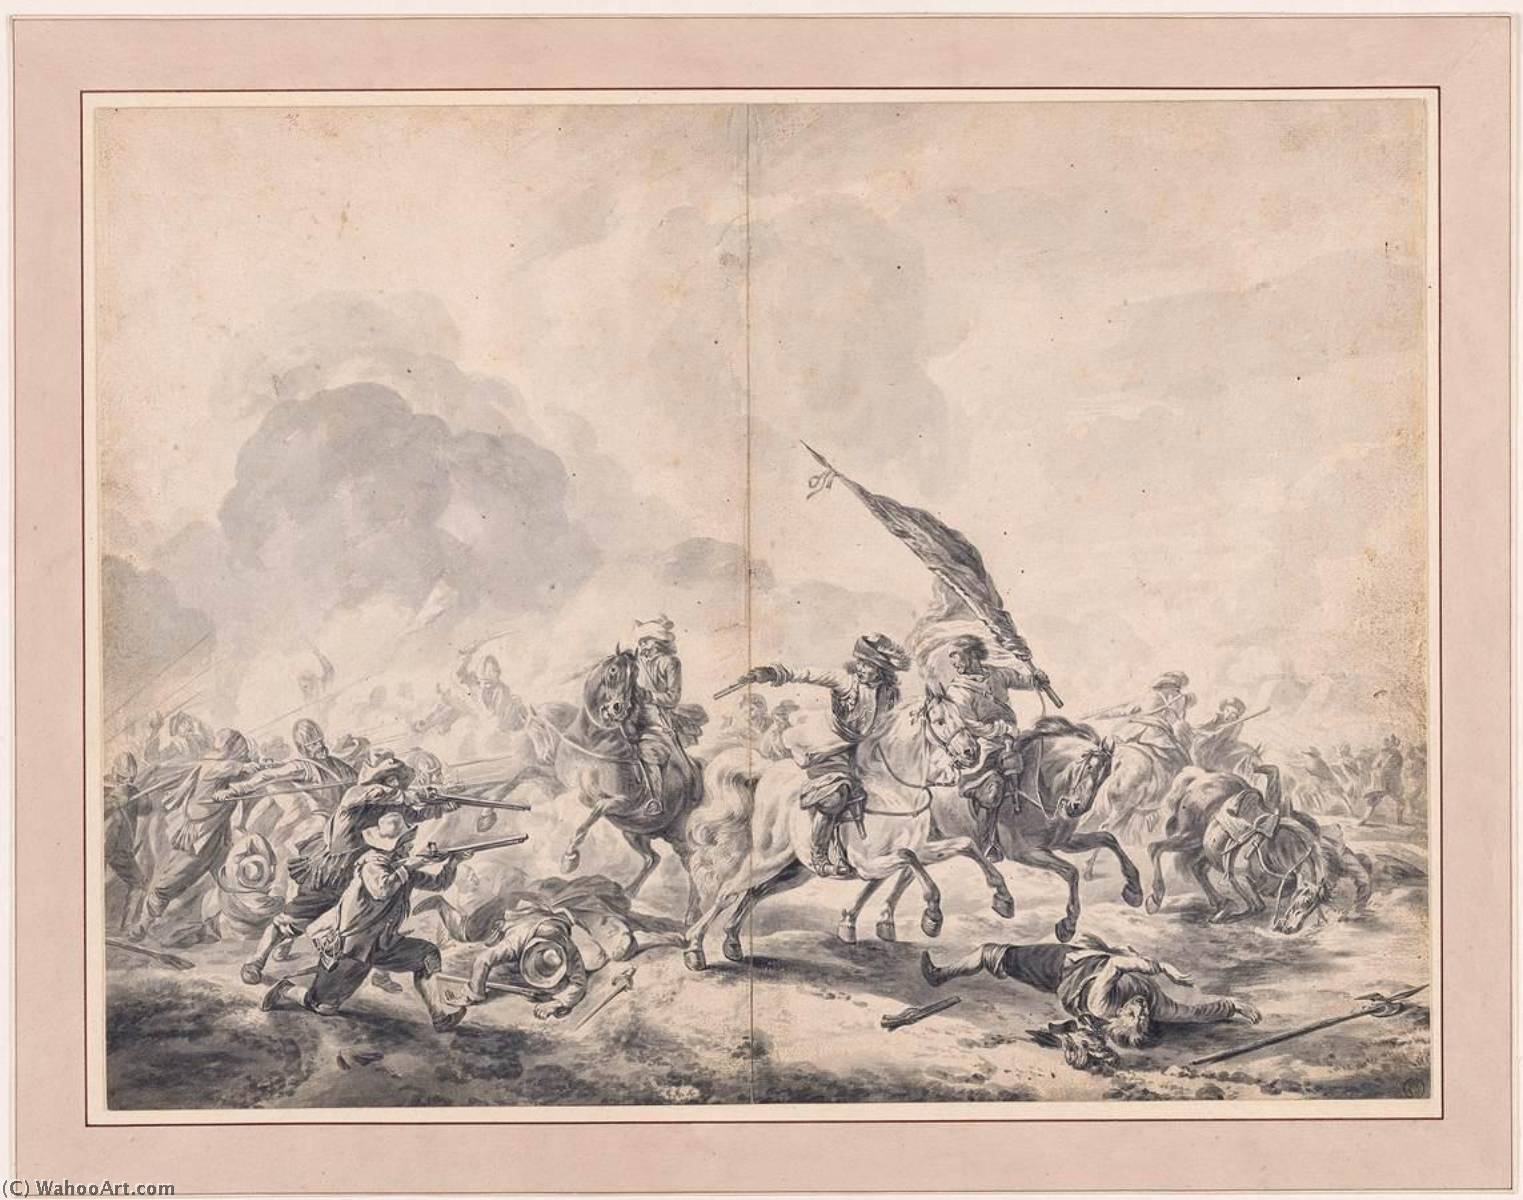 WikiOO.org - Encyclopedia of Fine Arts - Malba, Artwork Jan Van Huchtenburg - Battle between Cavalrymen and Foot Soldiers